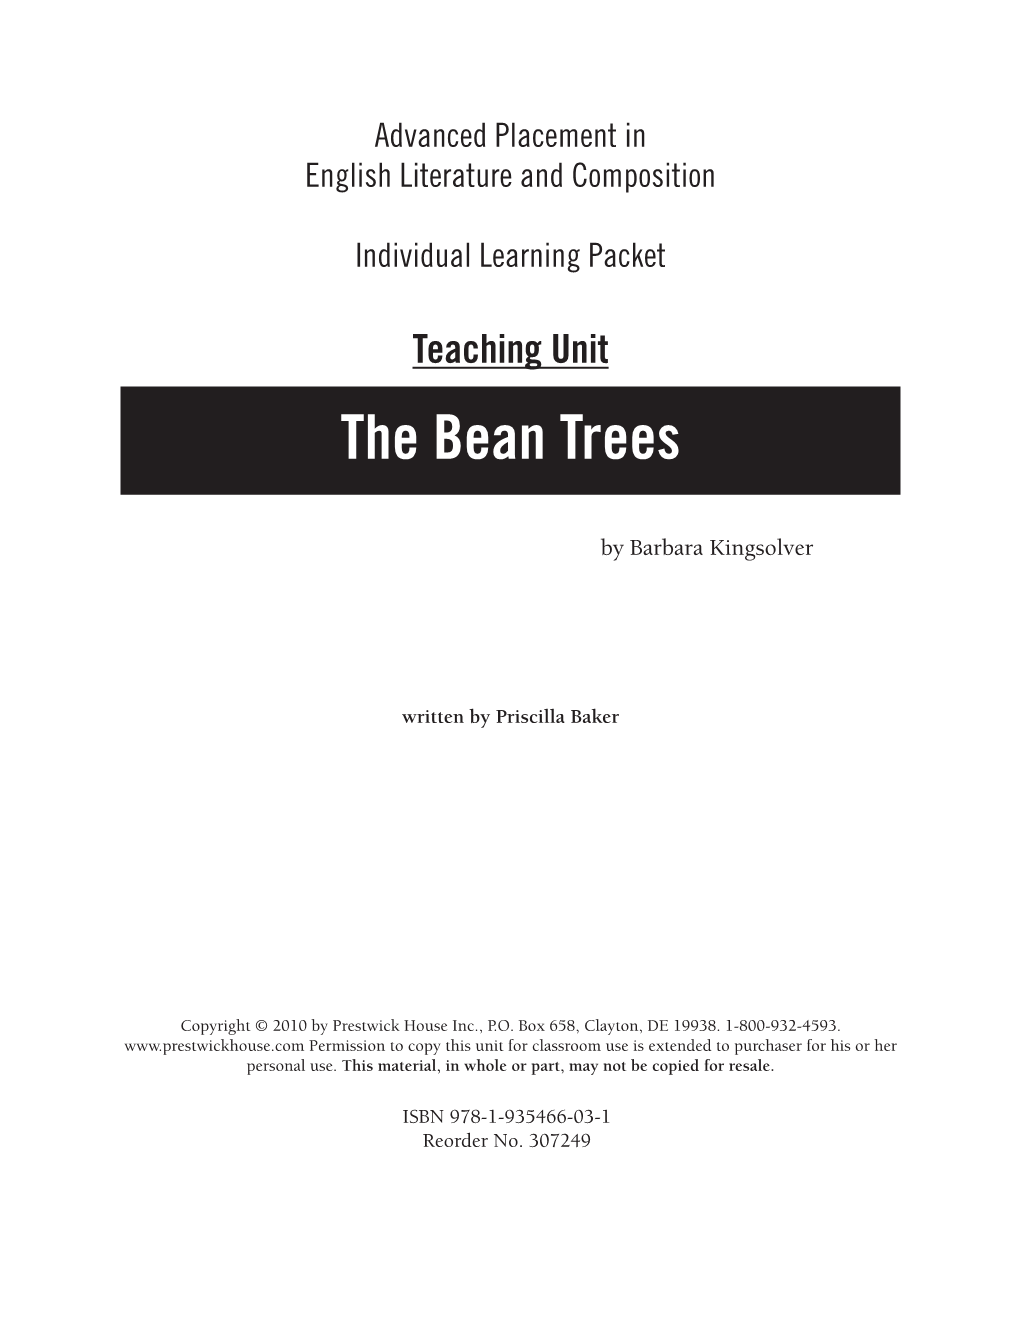 Teaching Unit the Bean Trees